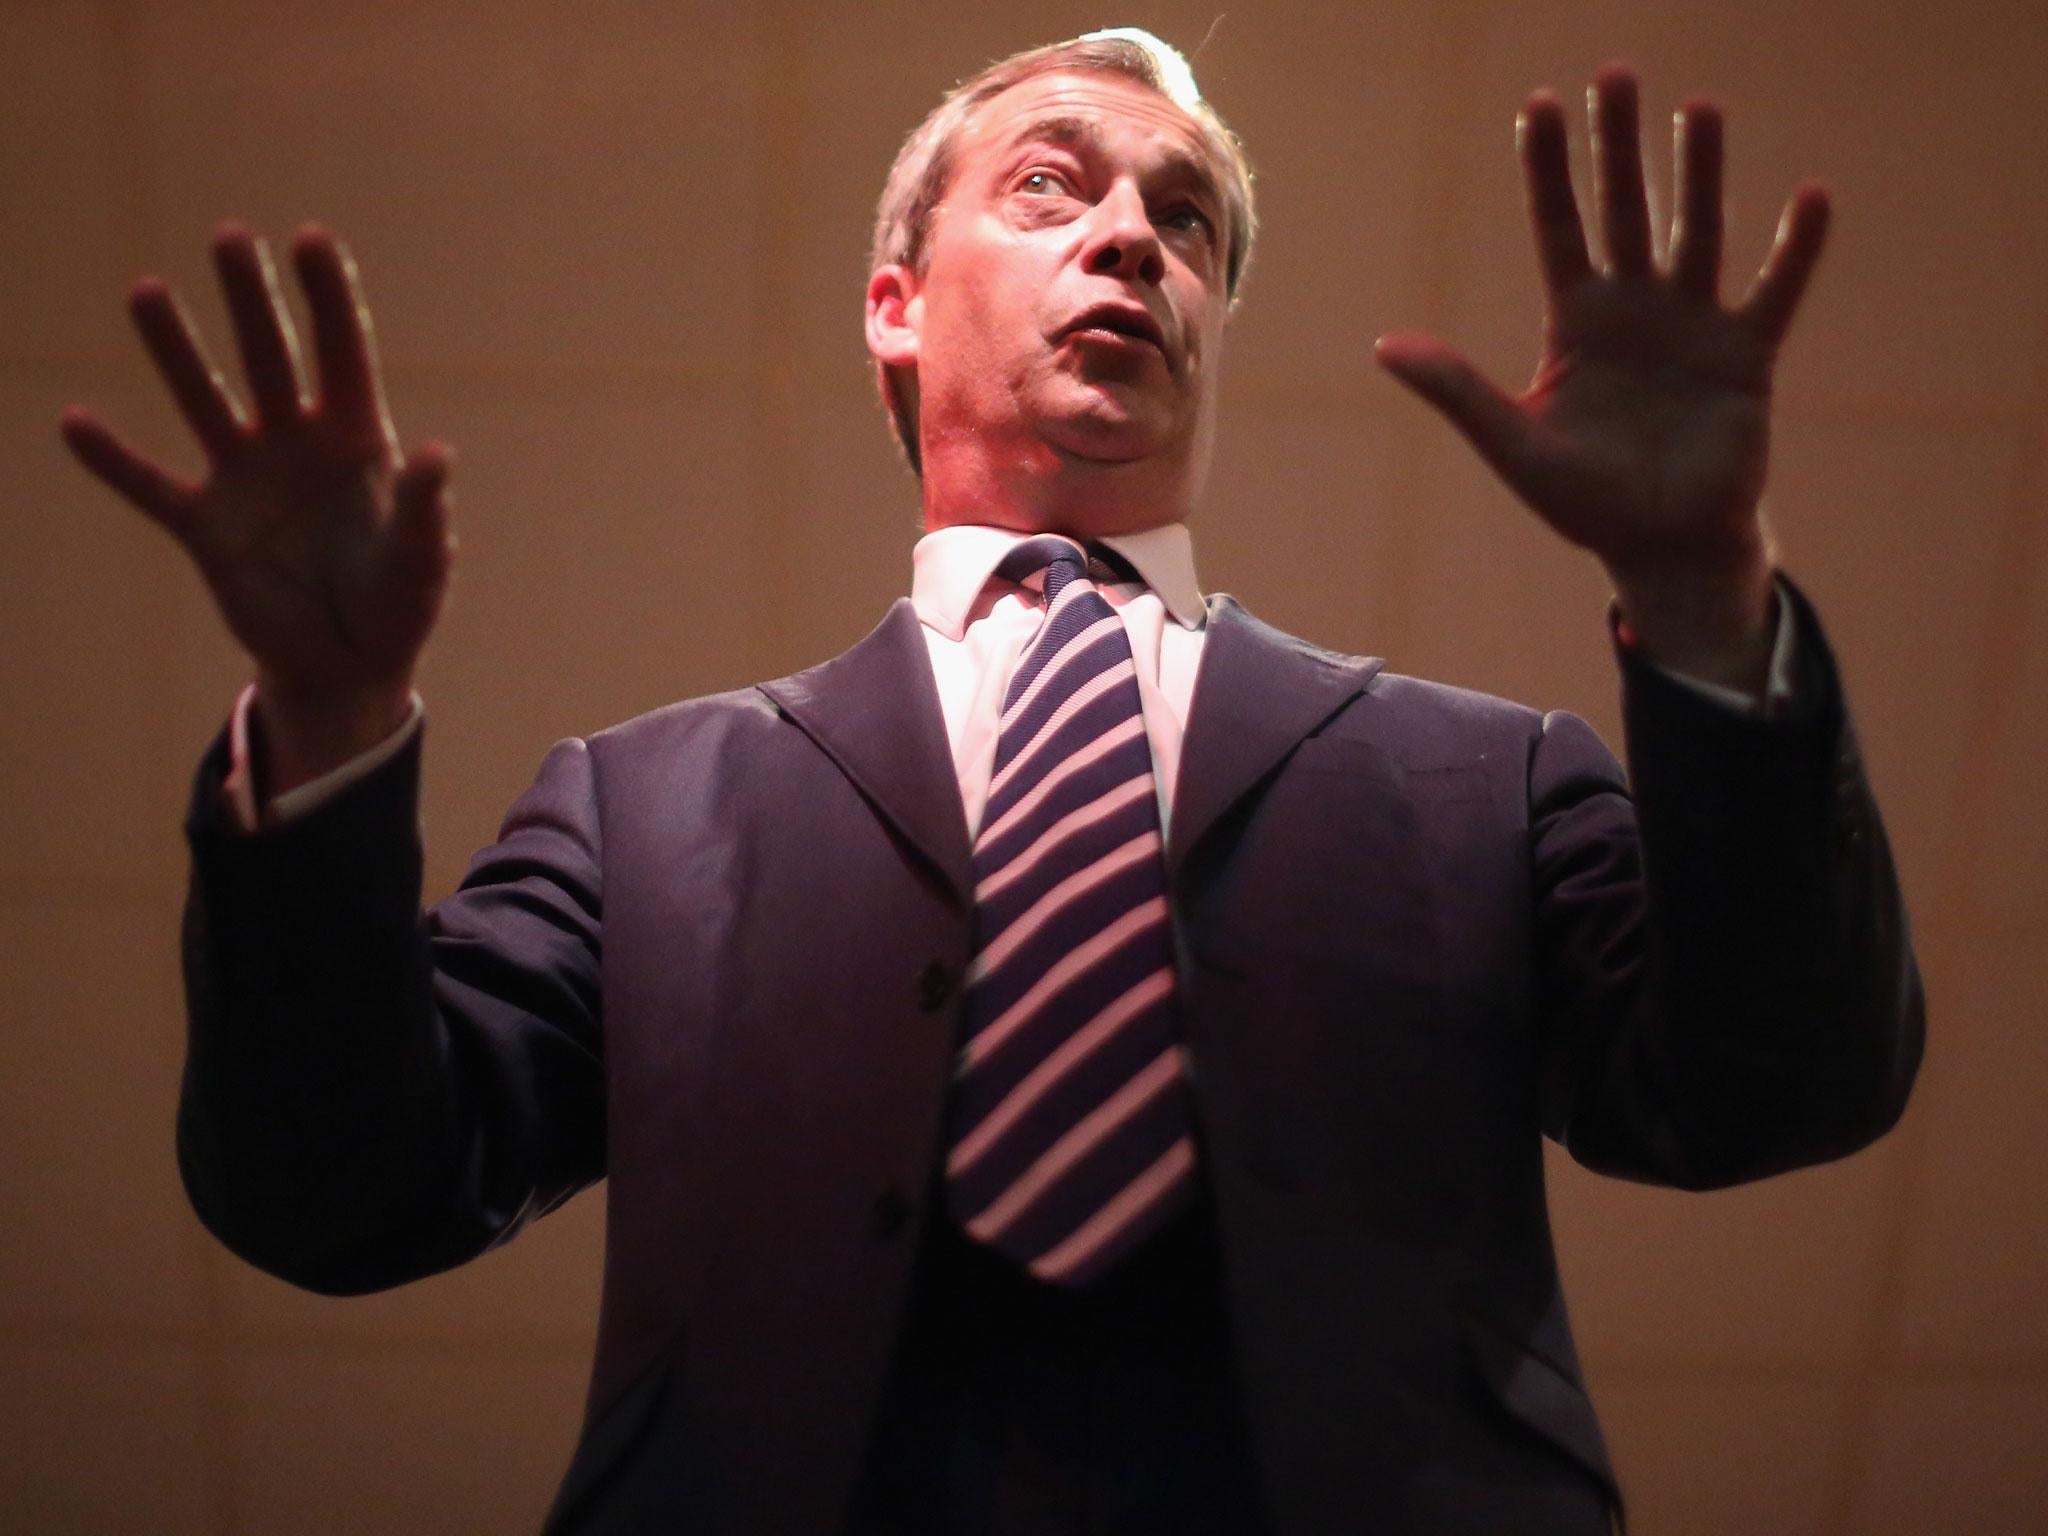 Nigel Farage was branded a fascist by teachers when he was at school